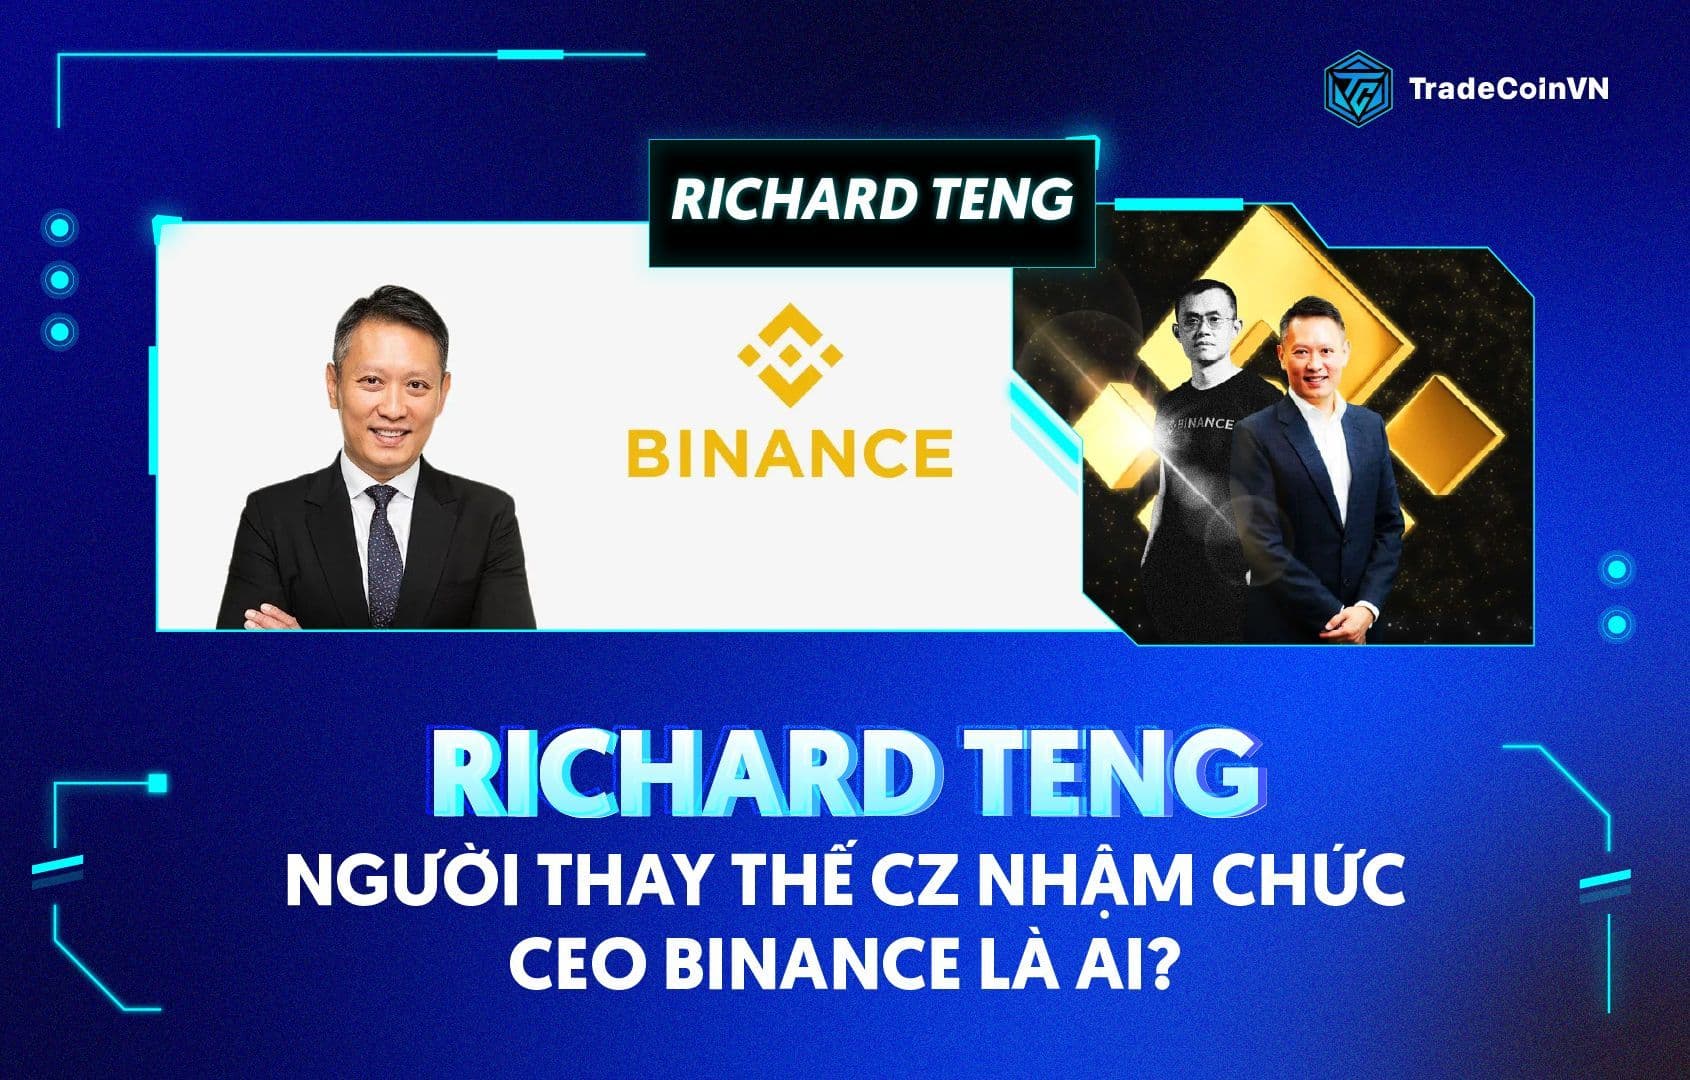 Richard Teng - người thay thế CZ nhậm chức CEO Binance là ai?